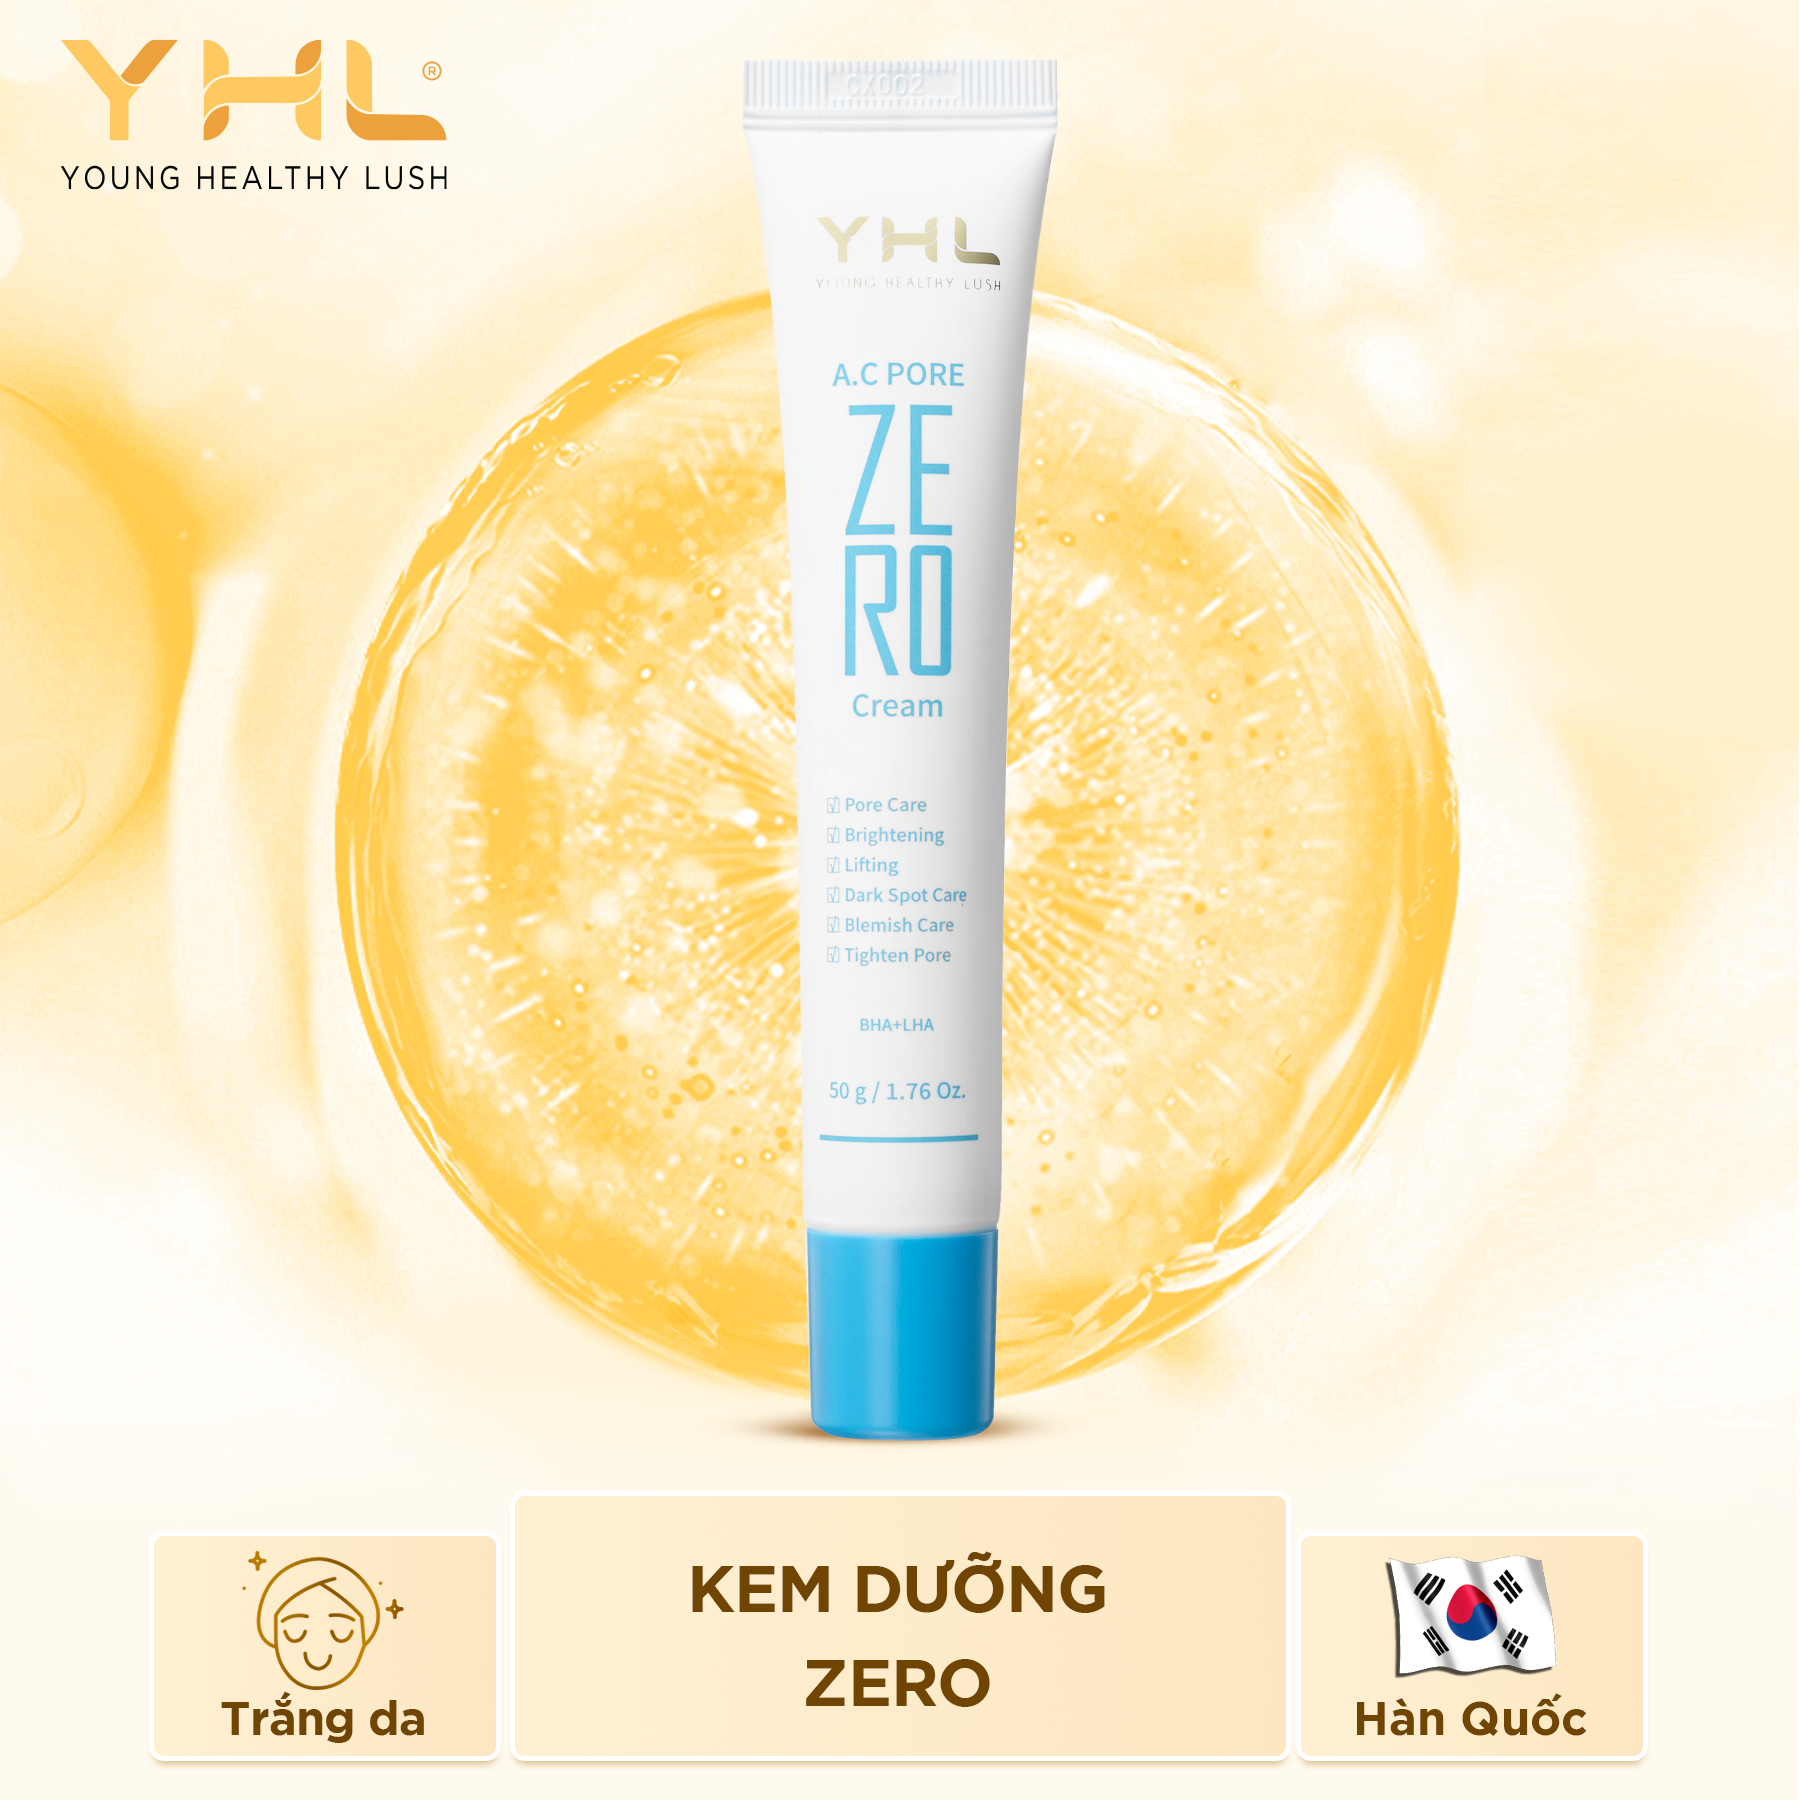 Kem dưỡng ZERO YHL Hàn Quốc 30ml giúp làm trắng da giảm vết nám đồi mồi trên da